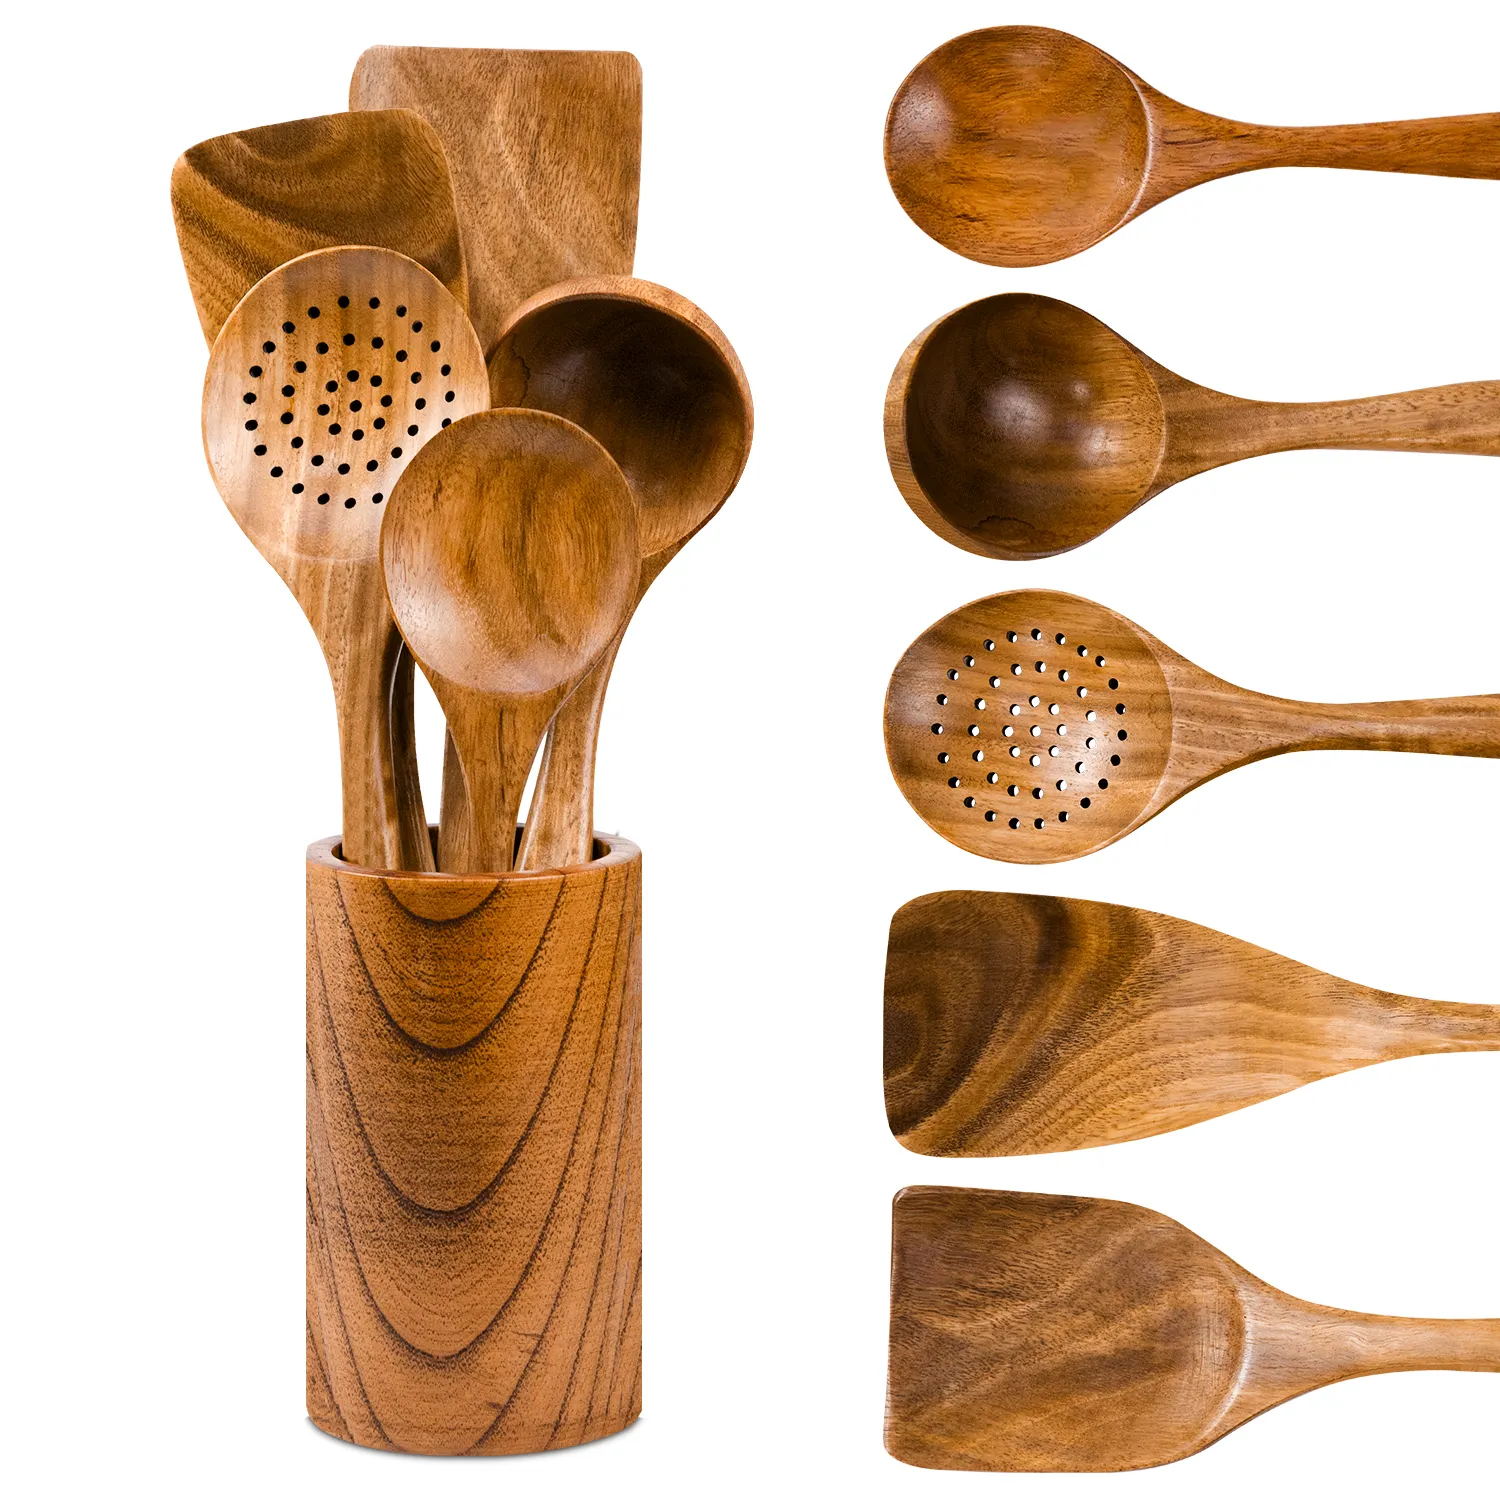 Juego de utensilios de cocina de madera GL, herramienta de cocina antiadherente, cucharas de cocina de madera y espátulas, cucharas de madera para cocinar, tenedor para ensalada